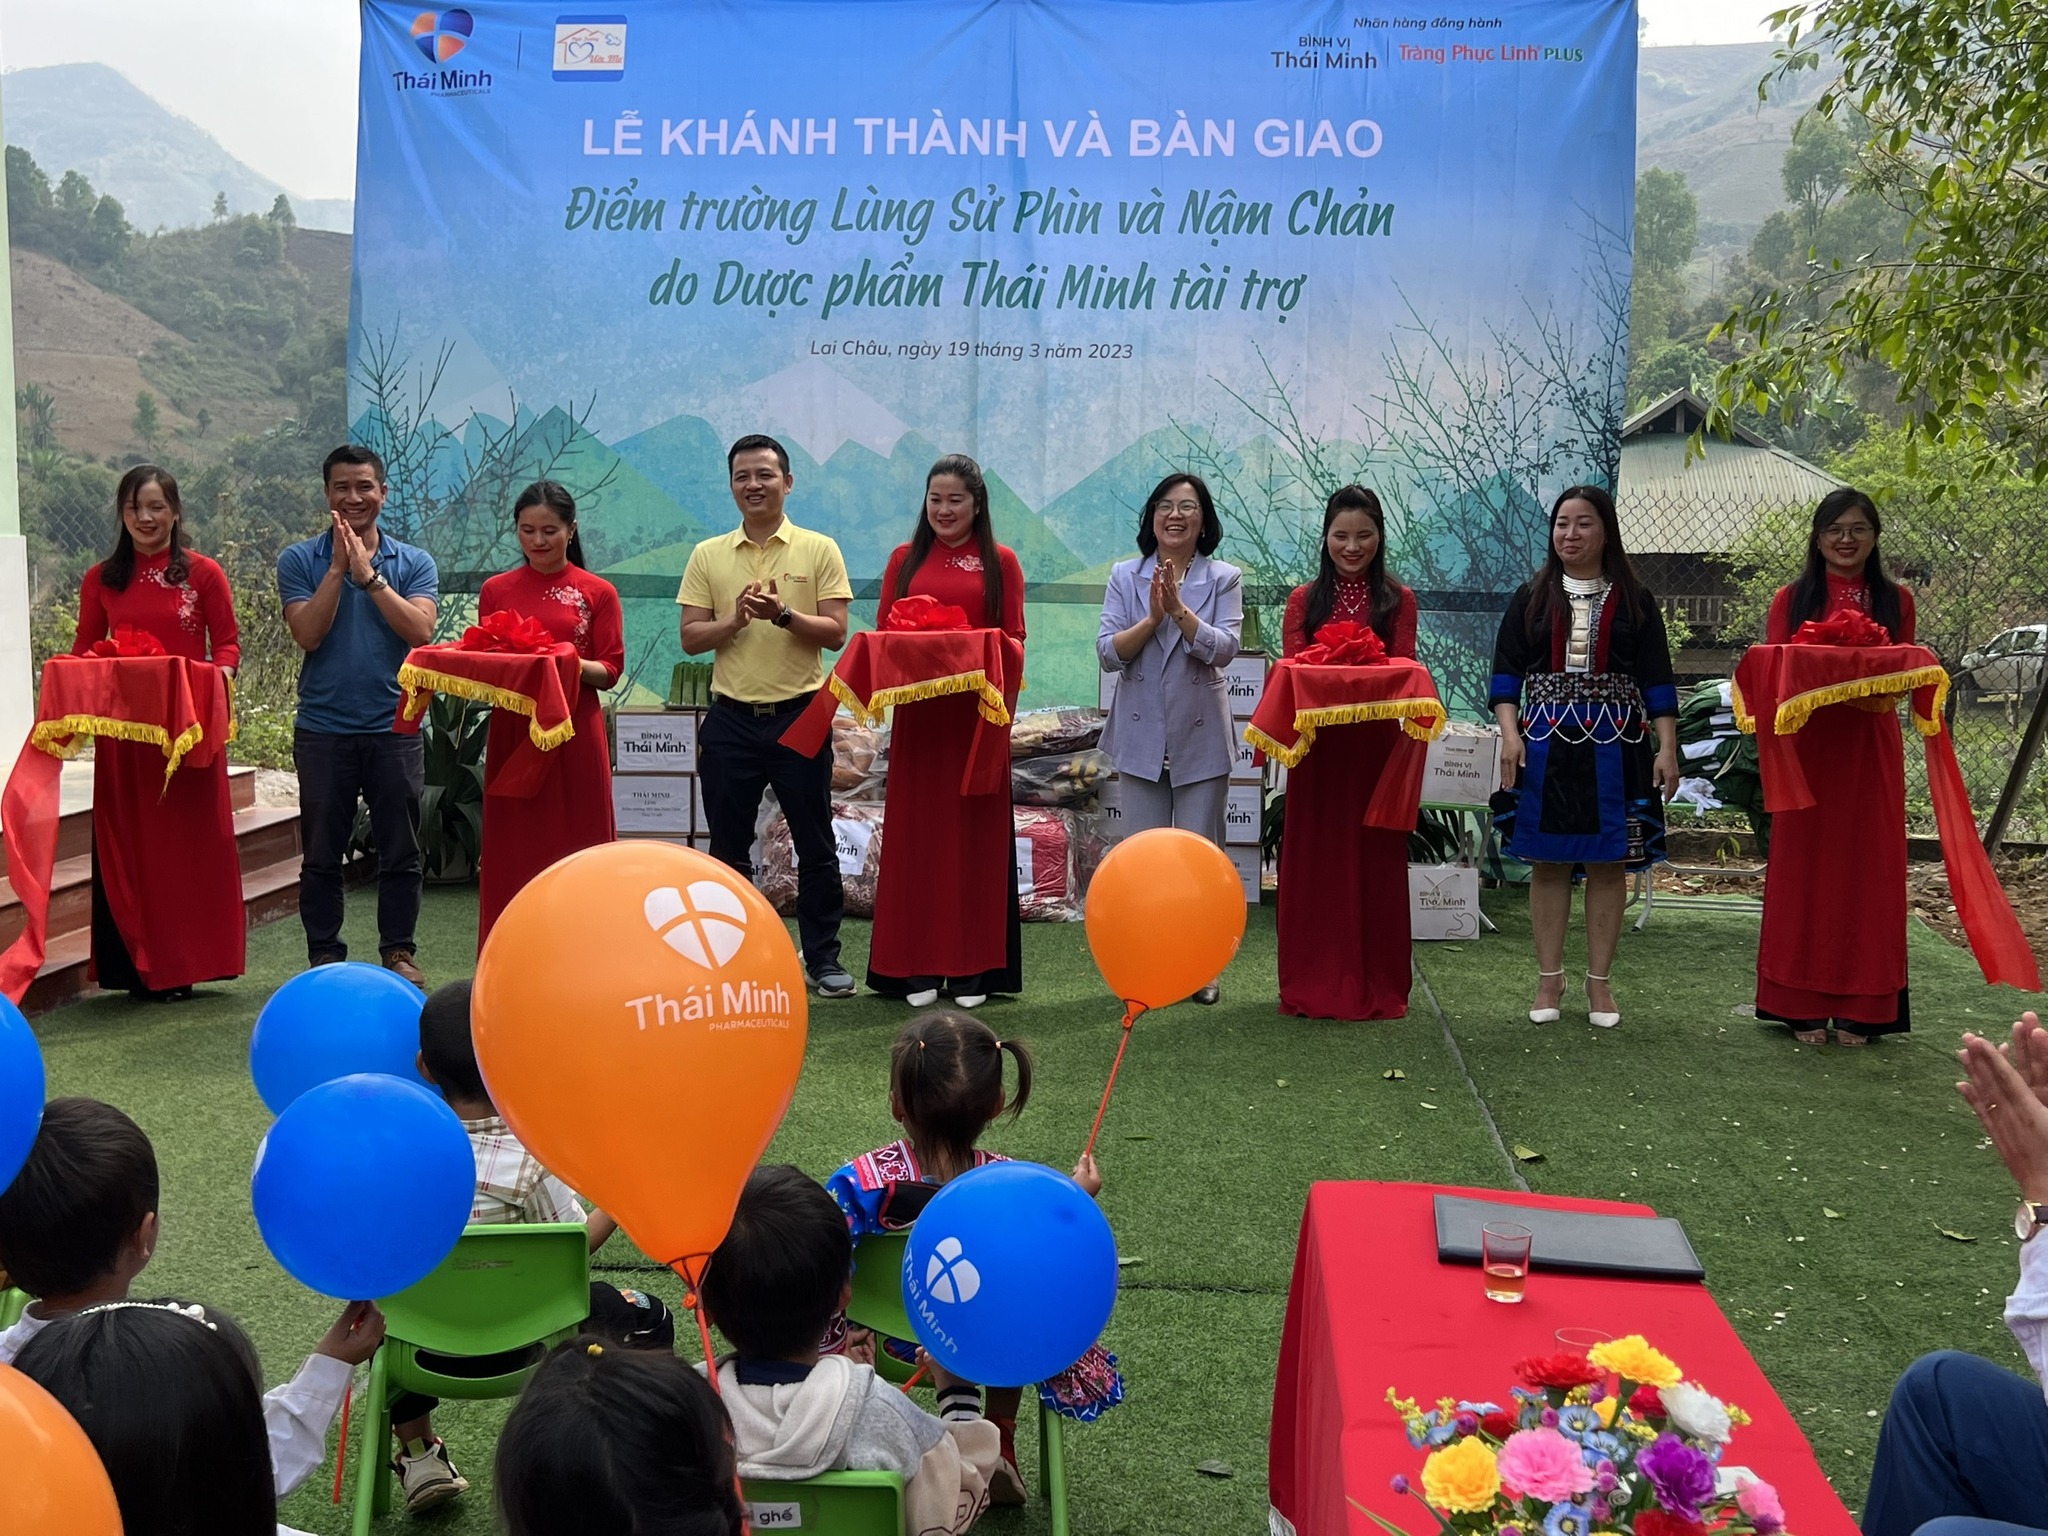 Dược phẩm Thái Minh khánh thành 2 điểm trường tại Sìn Hồ, Lai Châu - Thời sự VTV1